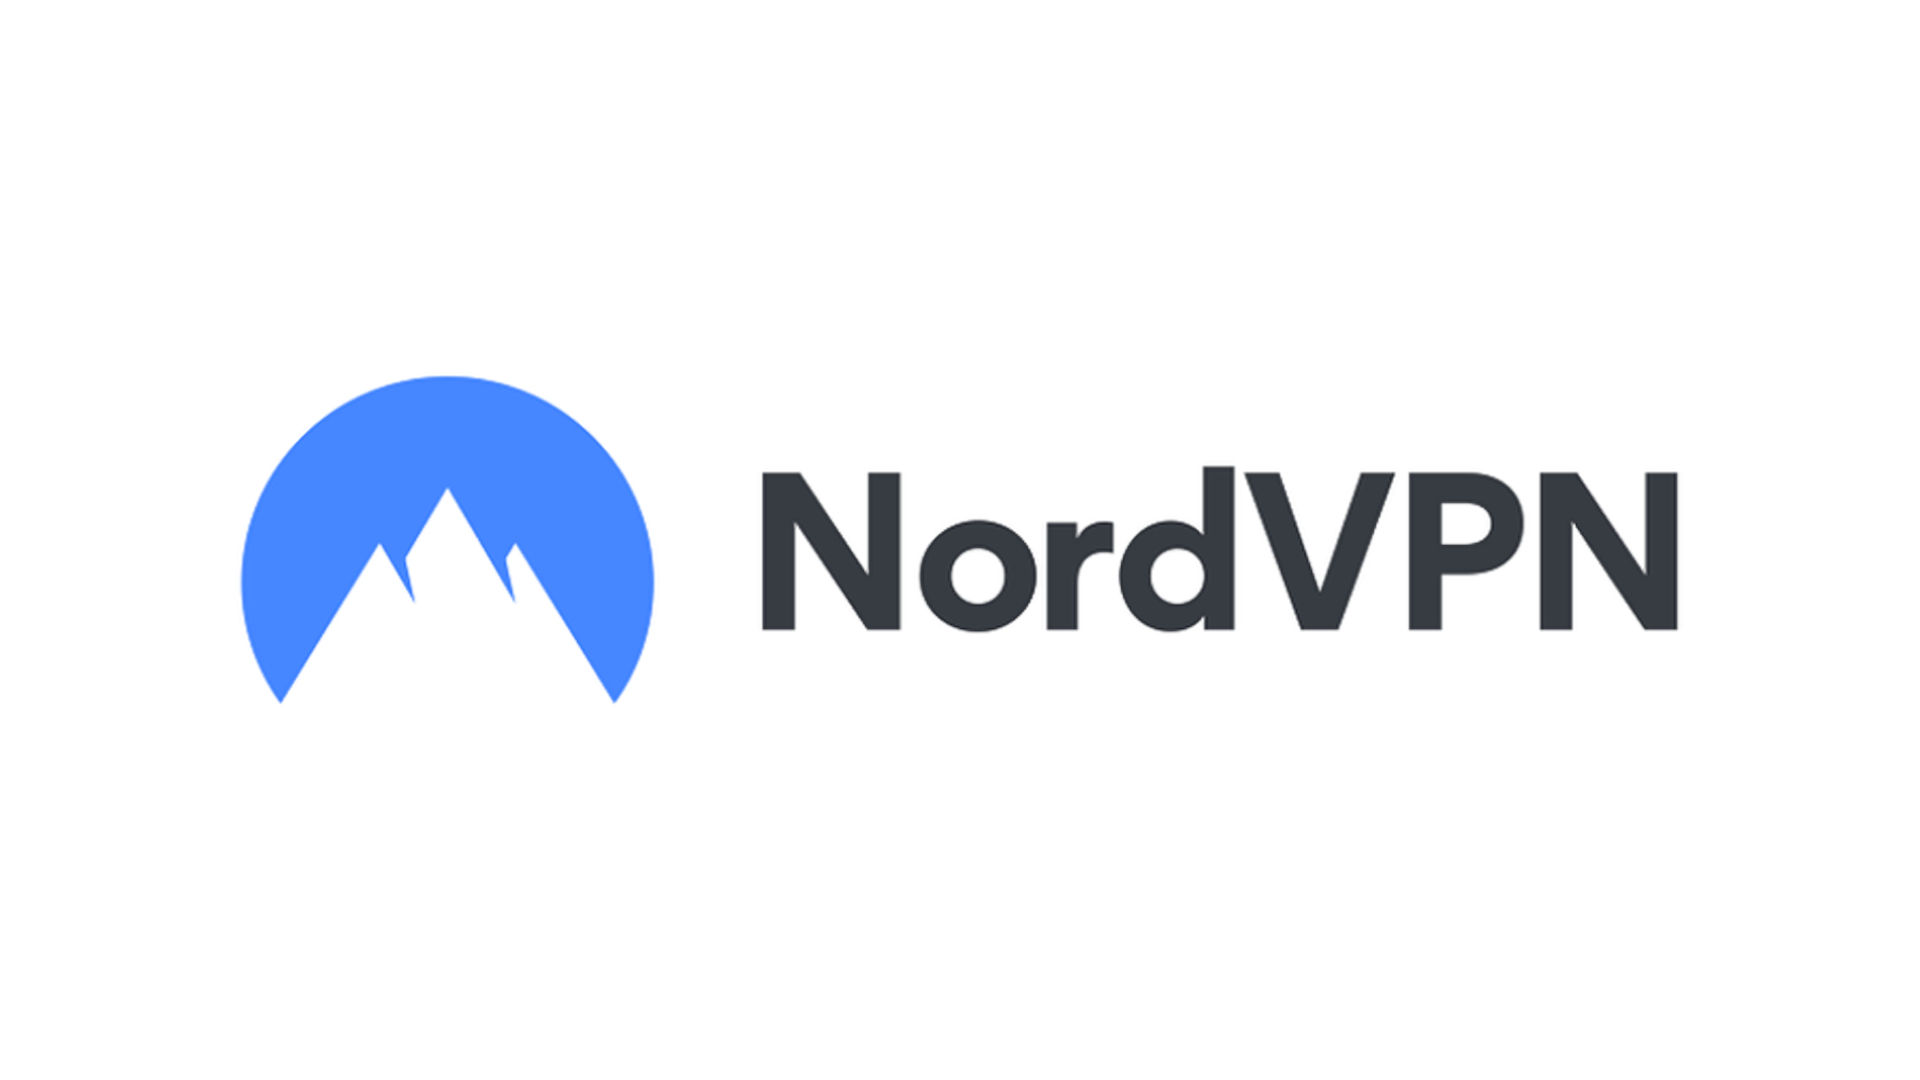 Лучший VPN для iPad - Nordvpn. Изображение показывает бизнес